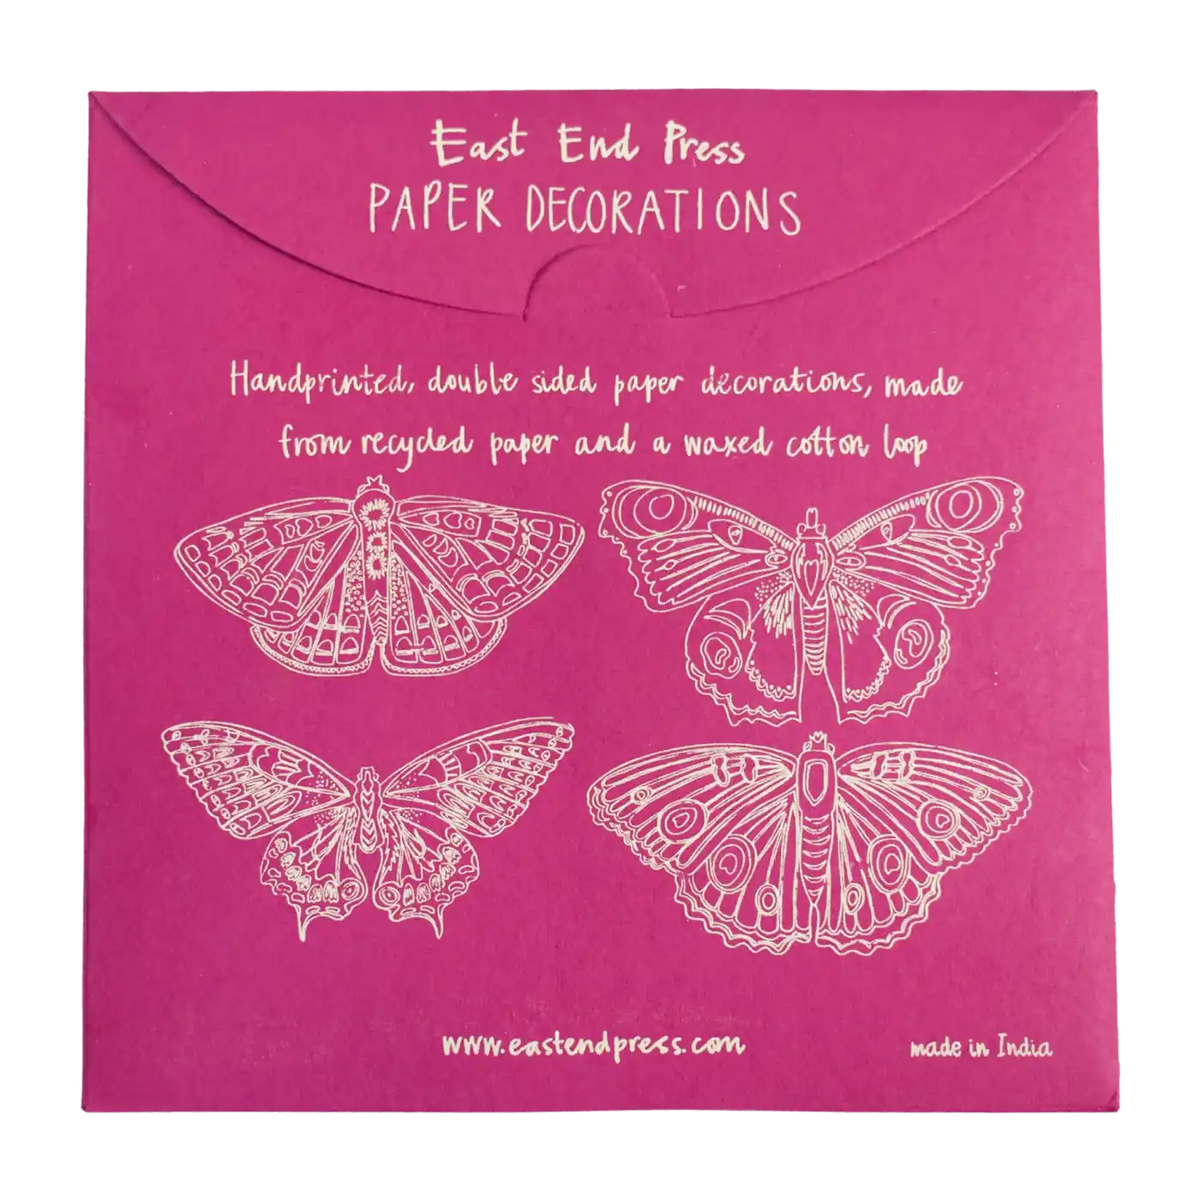 Papierdekoration / Schmetterlinge 4 Set / zum aufhängen / Handsiebdruck / Baumwollpapier